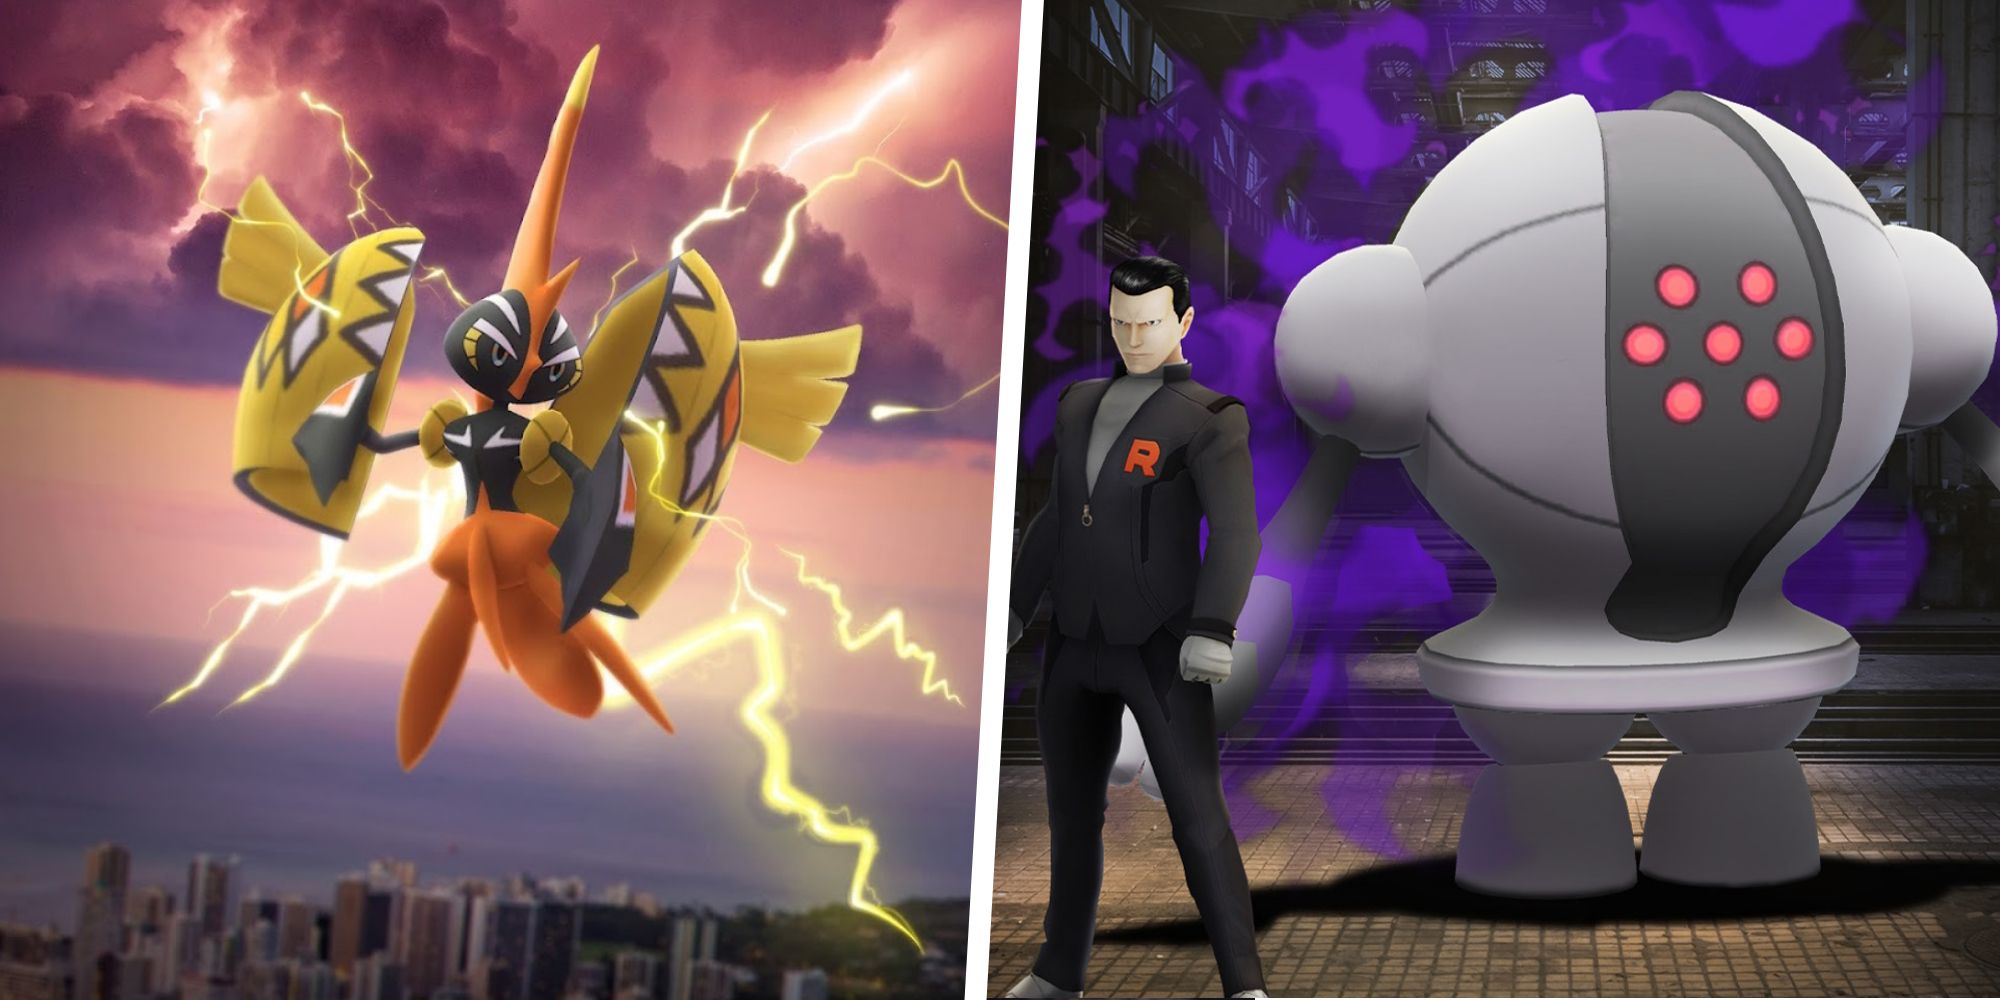 Miko🐽 on X: 🇺🇸🇪🇸🇫🇷 Current Raid Bosses Crackling Voltage Event⚡️ # PokemonGO #PokemonGOApp #MikoGraphics  / X